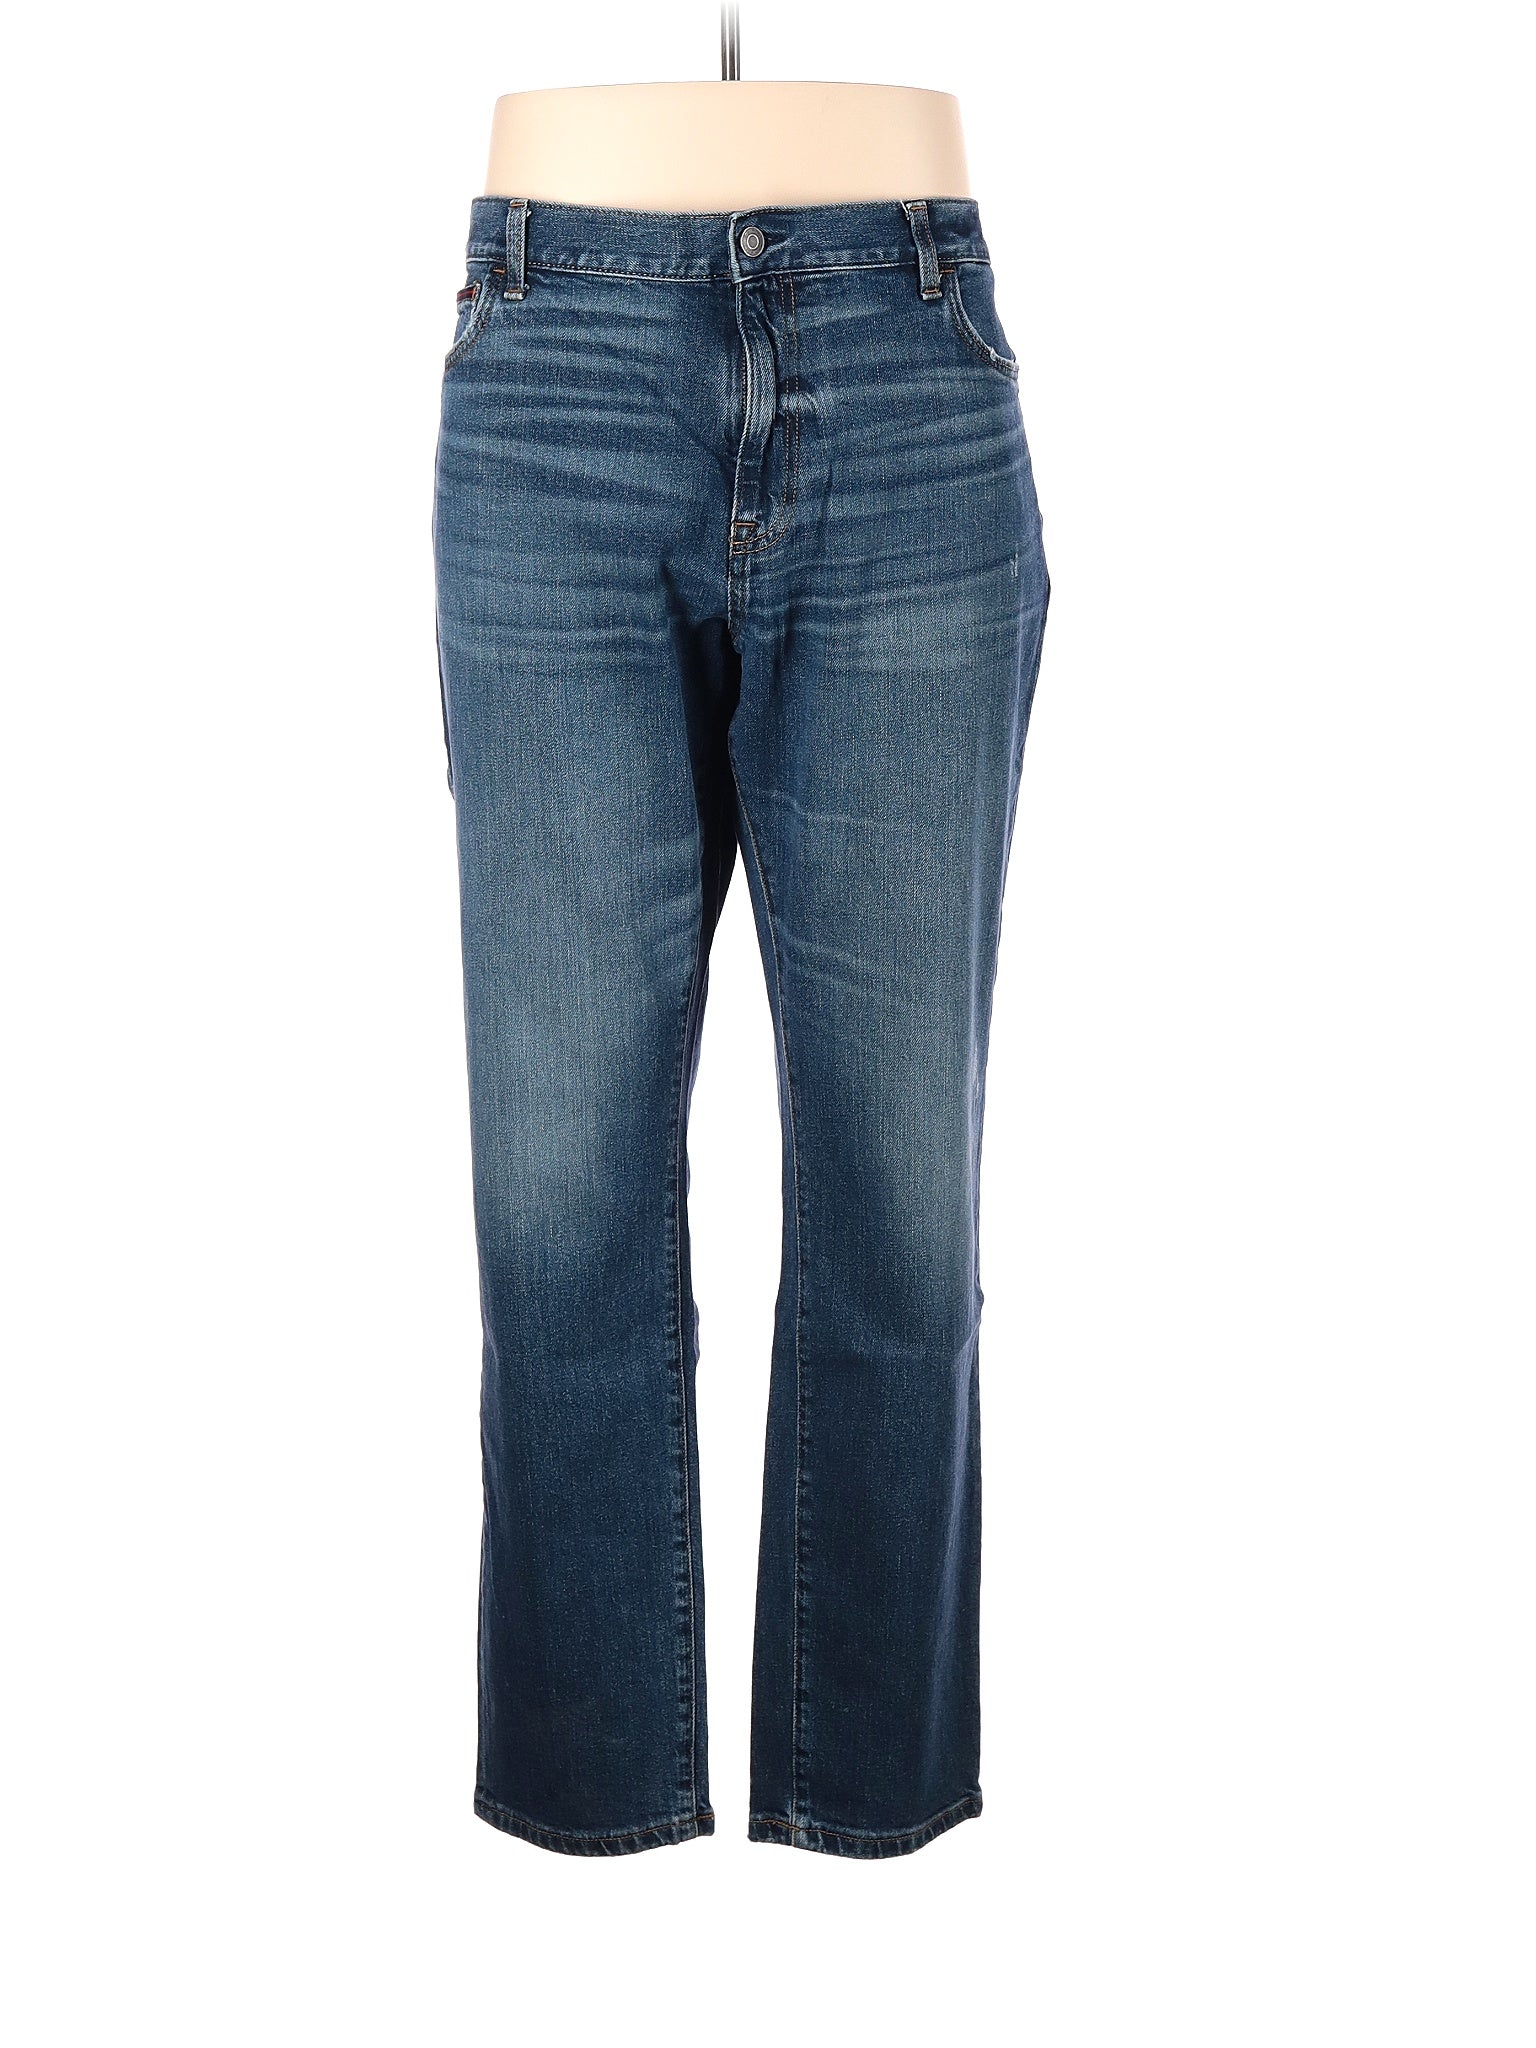 Jeans size - 40 (W40 L32)